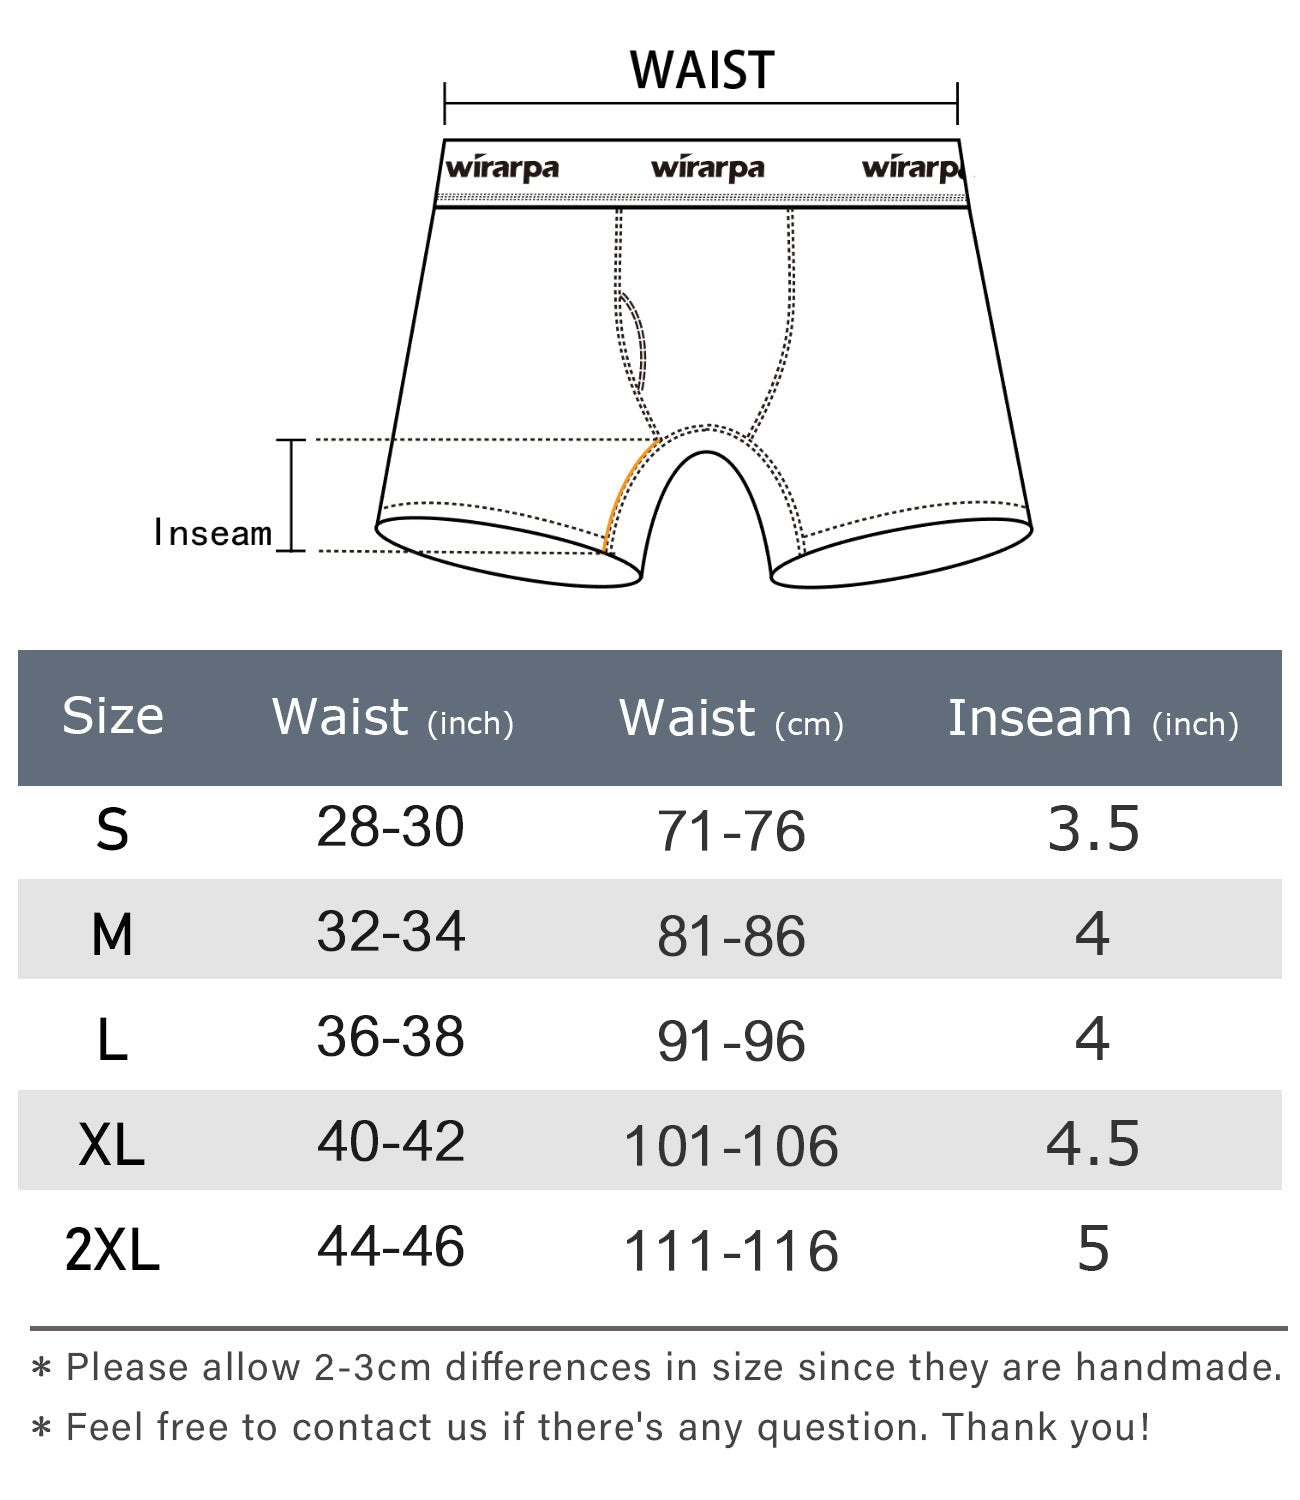 wirarpa Men's Cotton Boxer Briefs Underwear Regular Leg 4 Pack - Wirarpa Apparel, Inc.